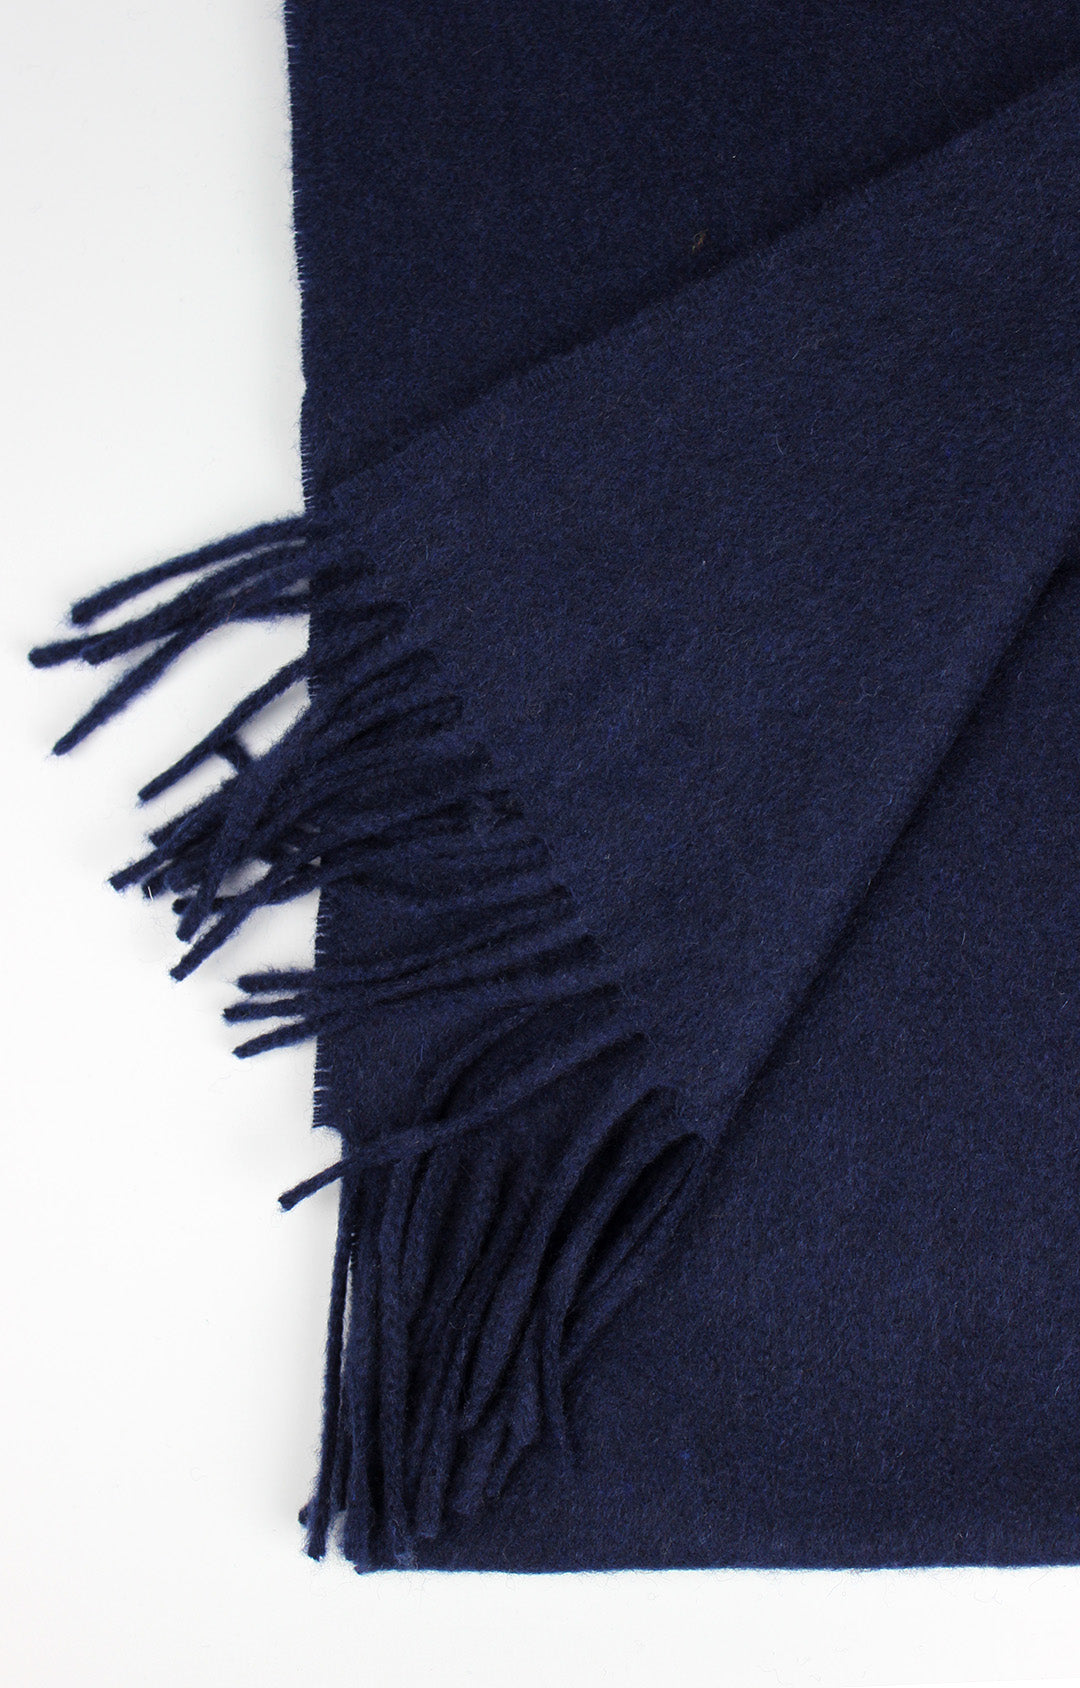 Kinalba 100% cashmere scarf Navy. Scottish Textiles Showcase.